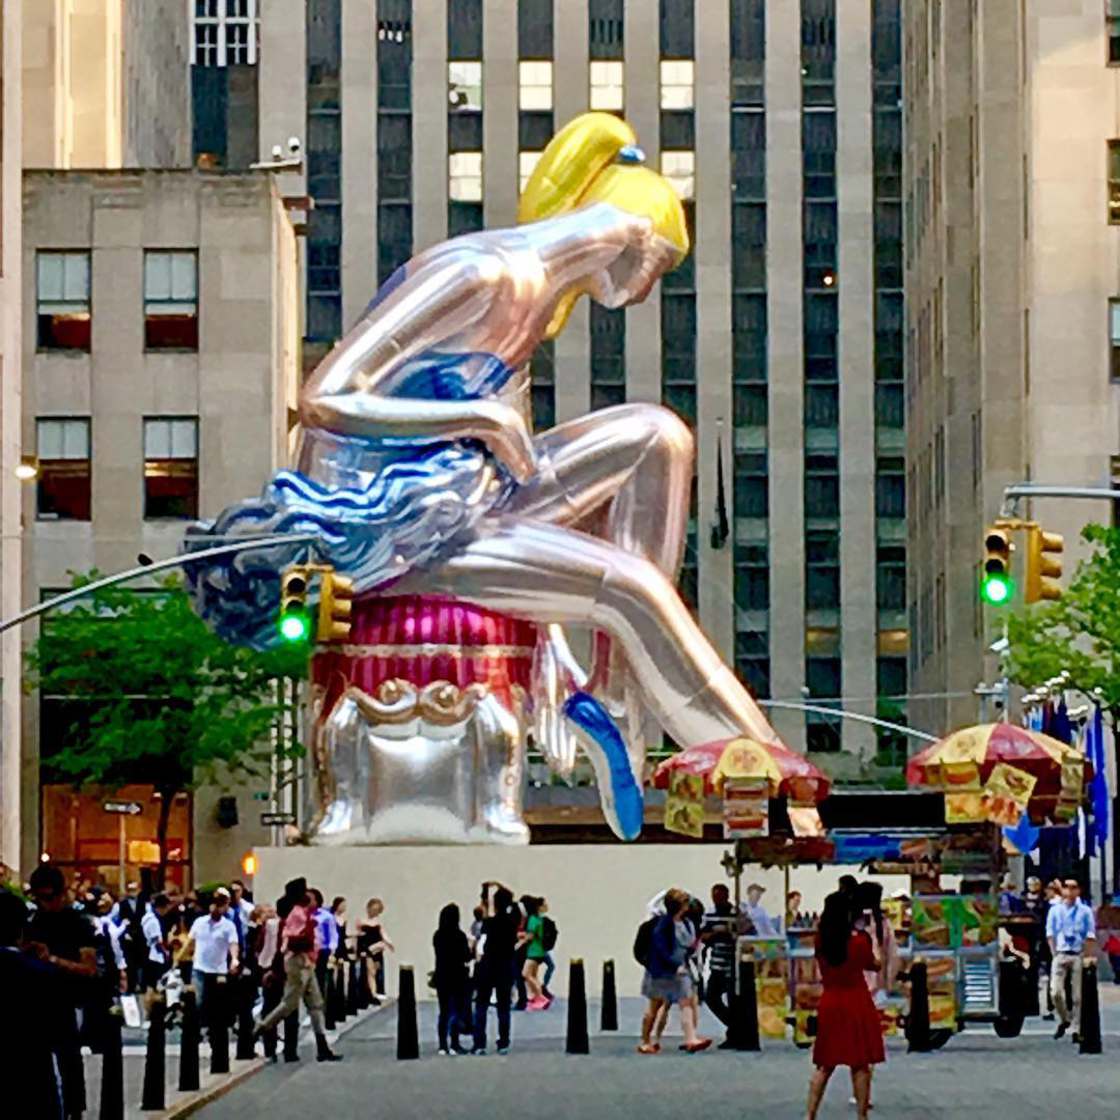 La bailarina de Jeff Koons visita New York